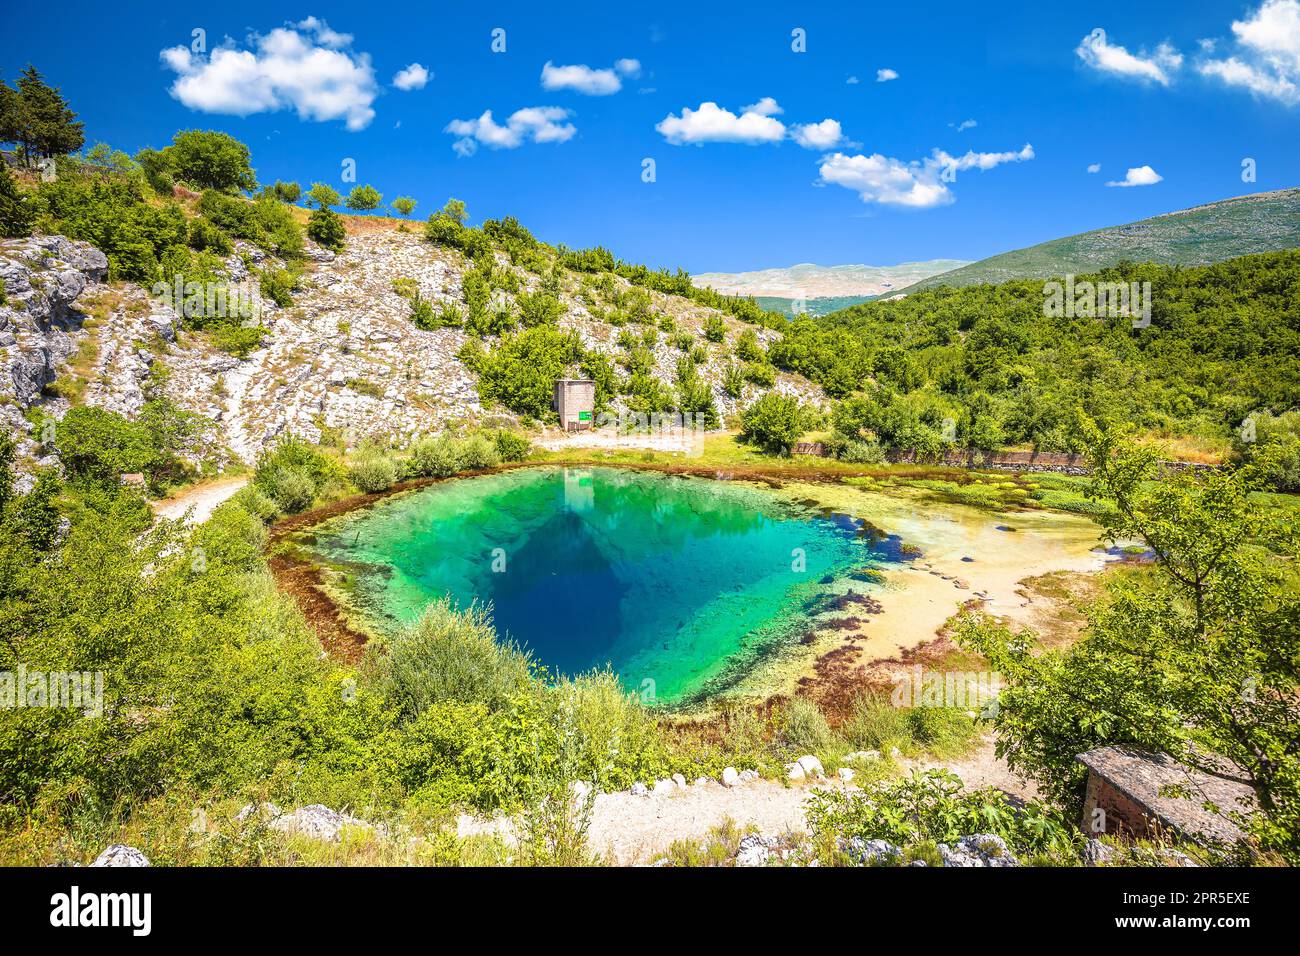 Die Quelle des Flusses Cetina oder das Auge der Erde, dalmatinisches Hinterland von Kroatien Stockfoto